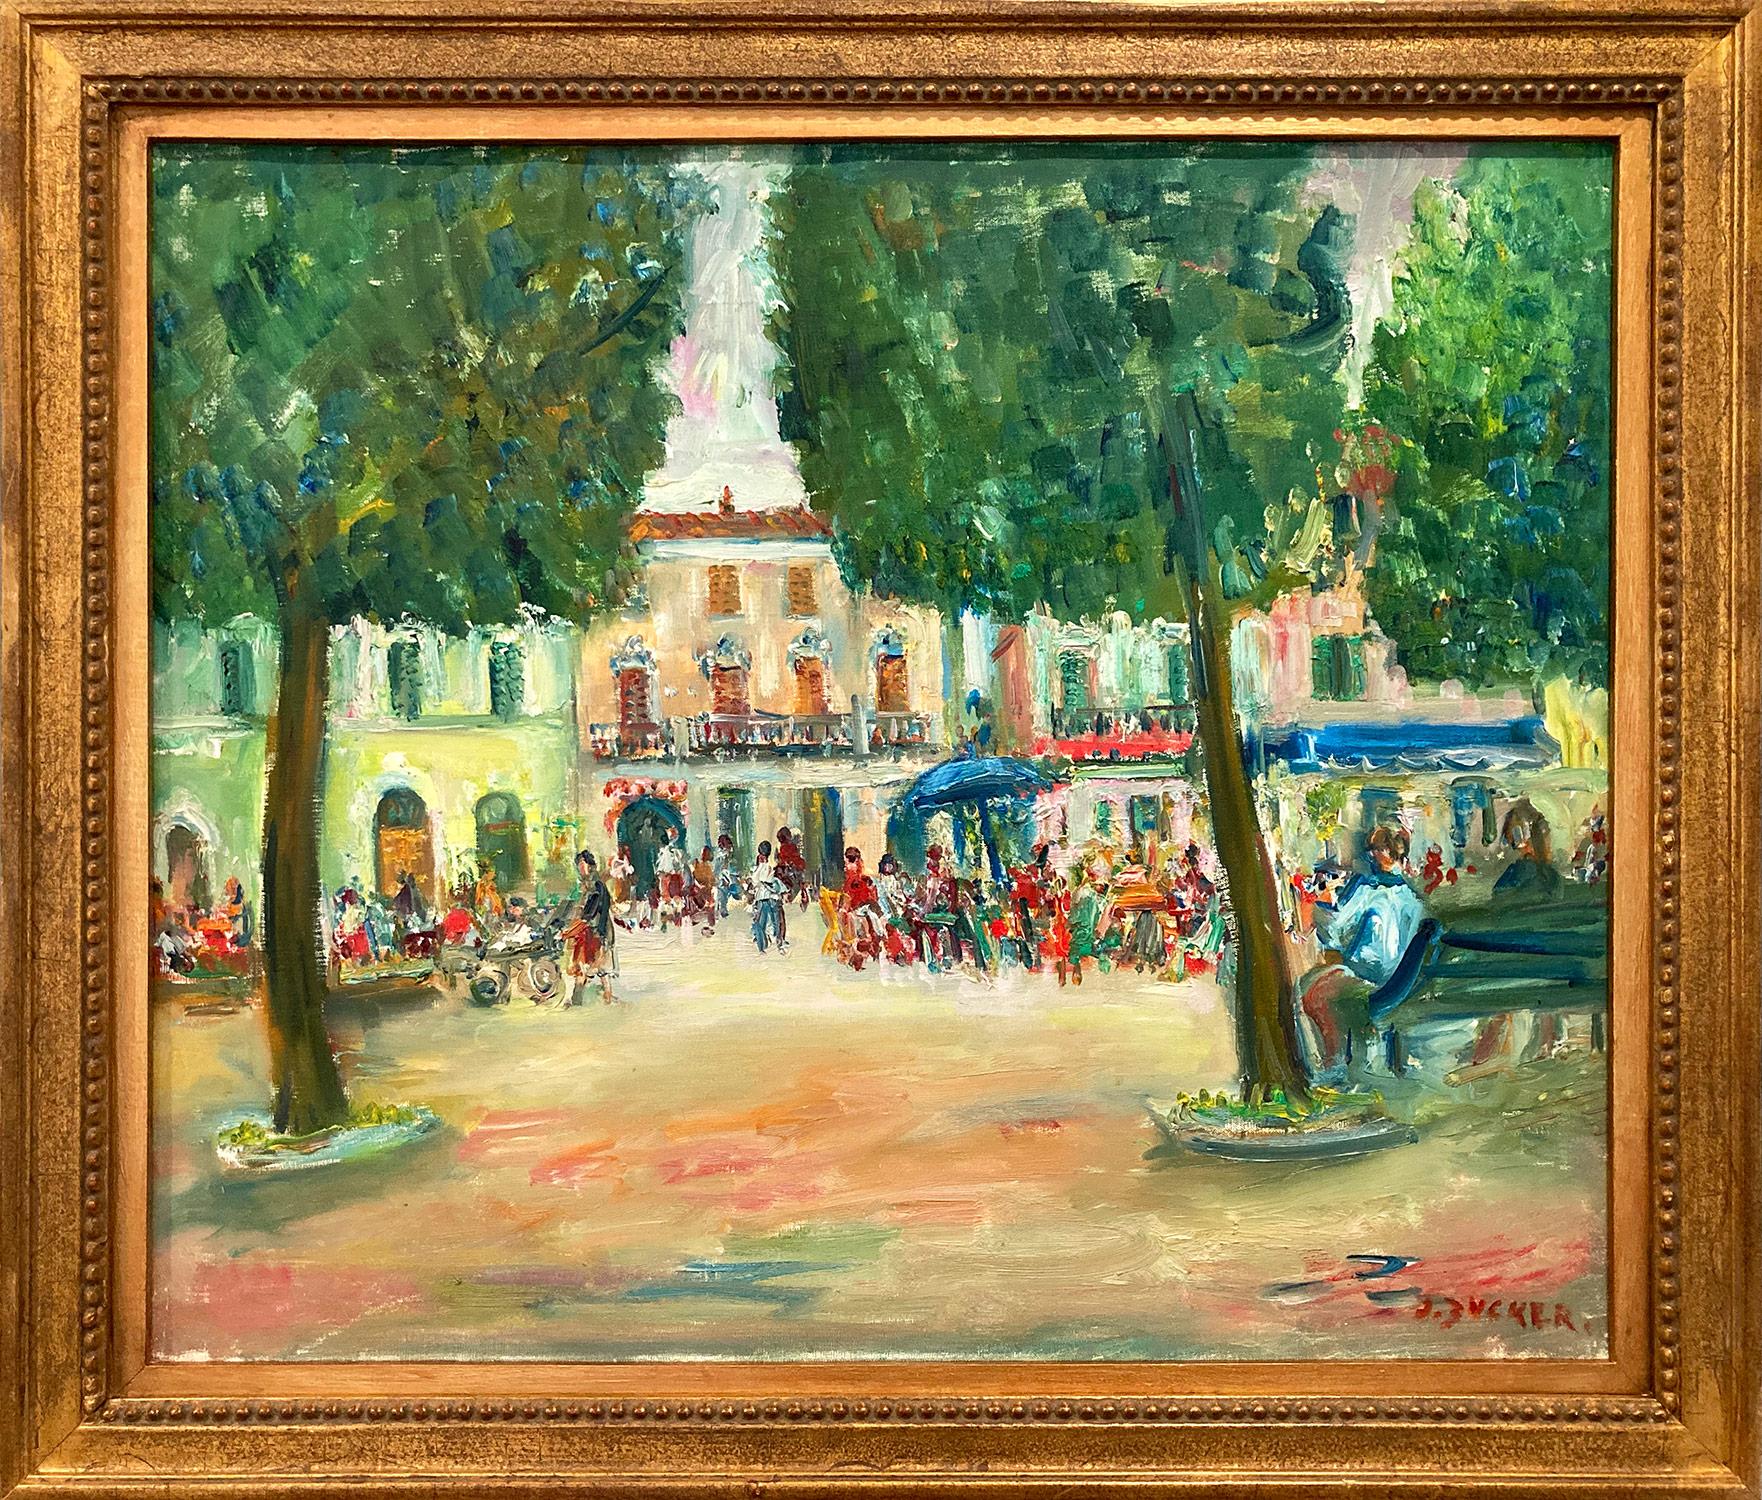 „Downtown Plaza“ Postimpressionistische Landschaft des Postimpressionismus, Ölgemälde mit Figuren in Plaza